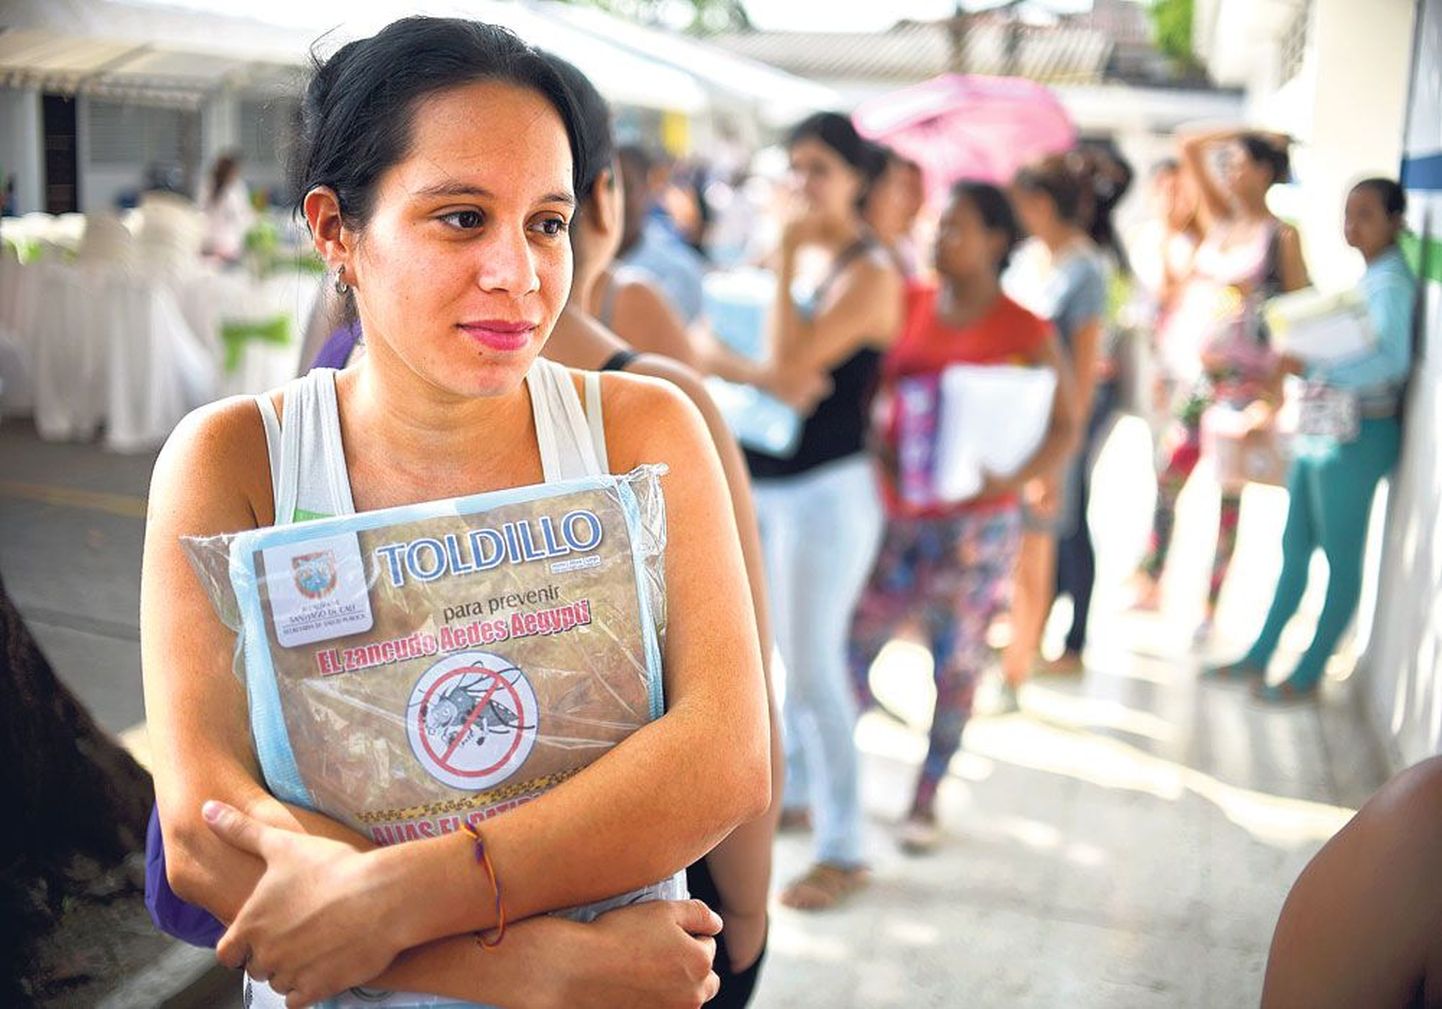 Министерство здравоохранения Колумбии бесплатно раздает беременным женщинам москитные сетки для защиты от укусов Aedes aegypti – желтолихорадочных комаров, являющихся переносчиками вируса Зика. Эта женщина живет в городе Кали.